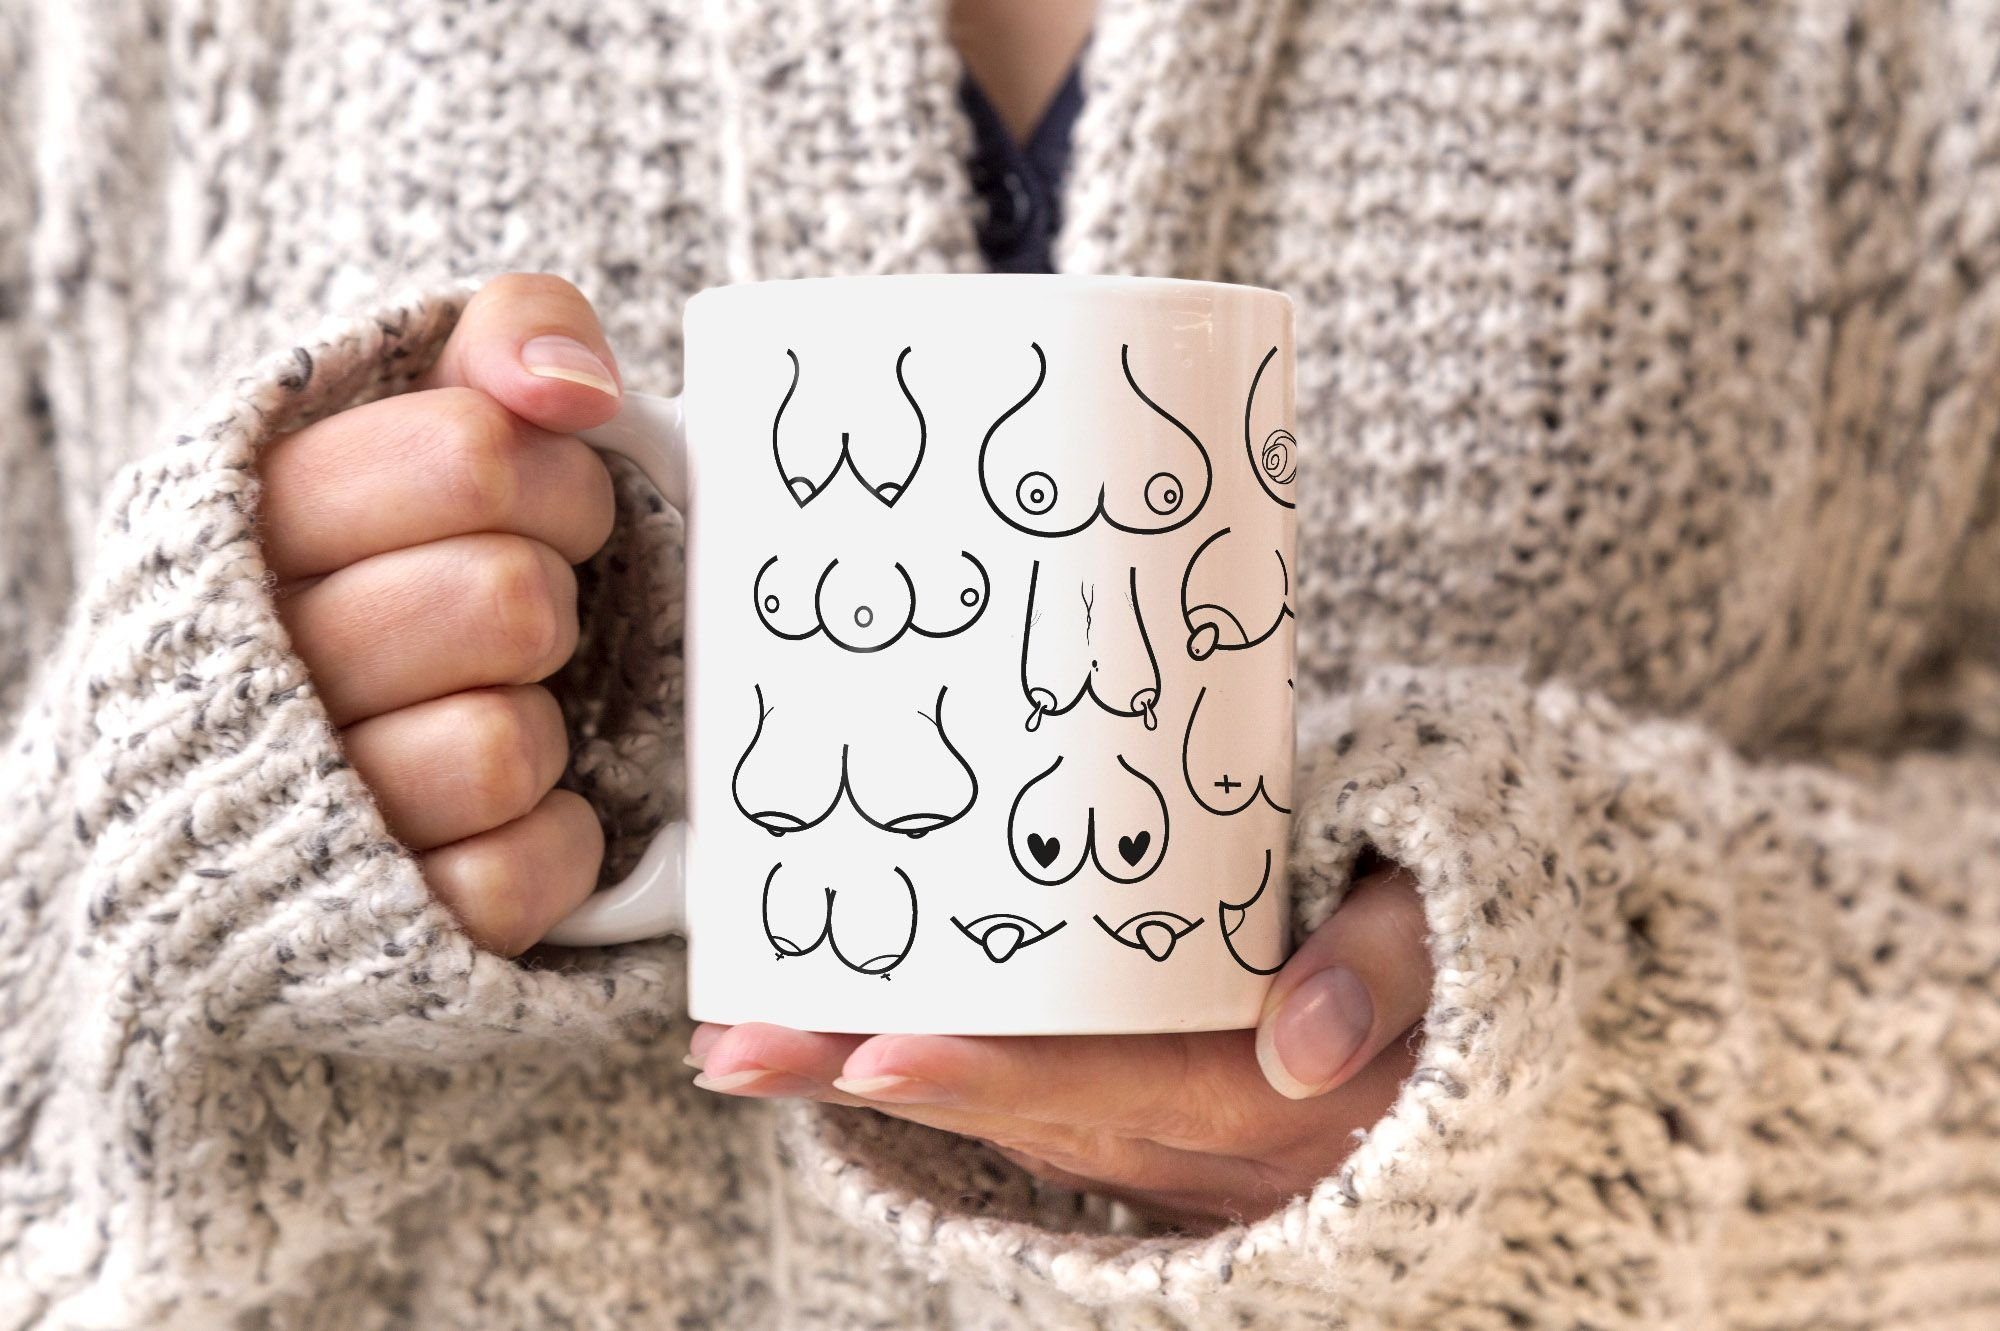 Fun-Tasse Büro-Tasse Kaffee-Tasse Tasse MoonWorks Keramik Titten-Muster Titten-Tasse MoonWorks®, Brüste